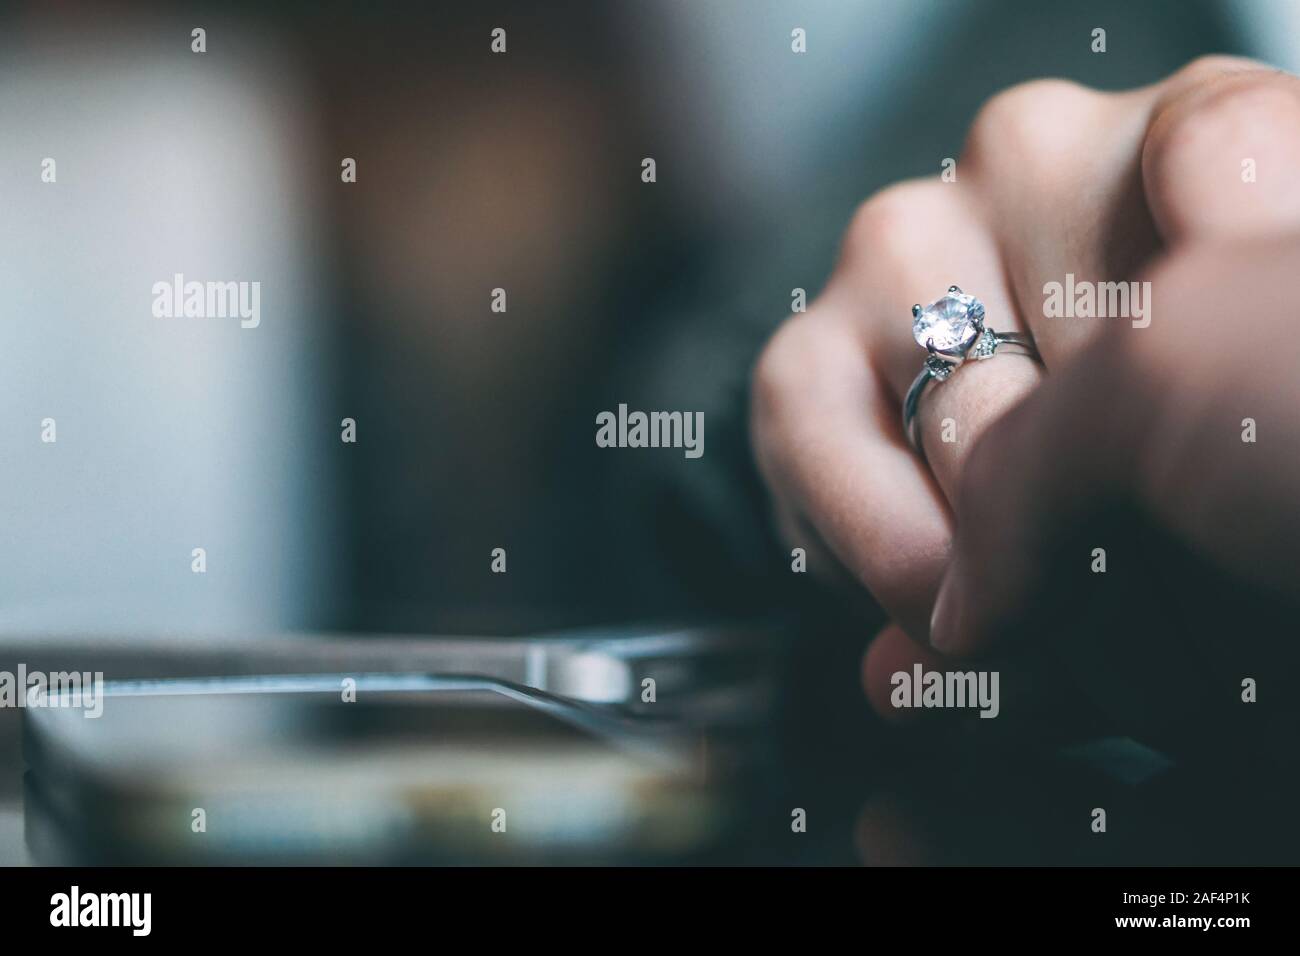 Man Heiratsantrag - Freund vorschlägt, seine Freundin zu heiraten - Begriff des Menschen Beziehung, Ring vorhanden und Liebe Stockfoto